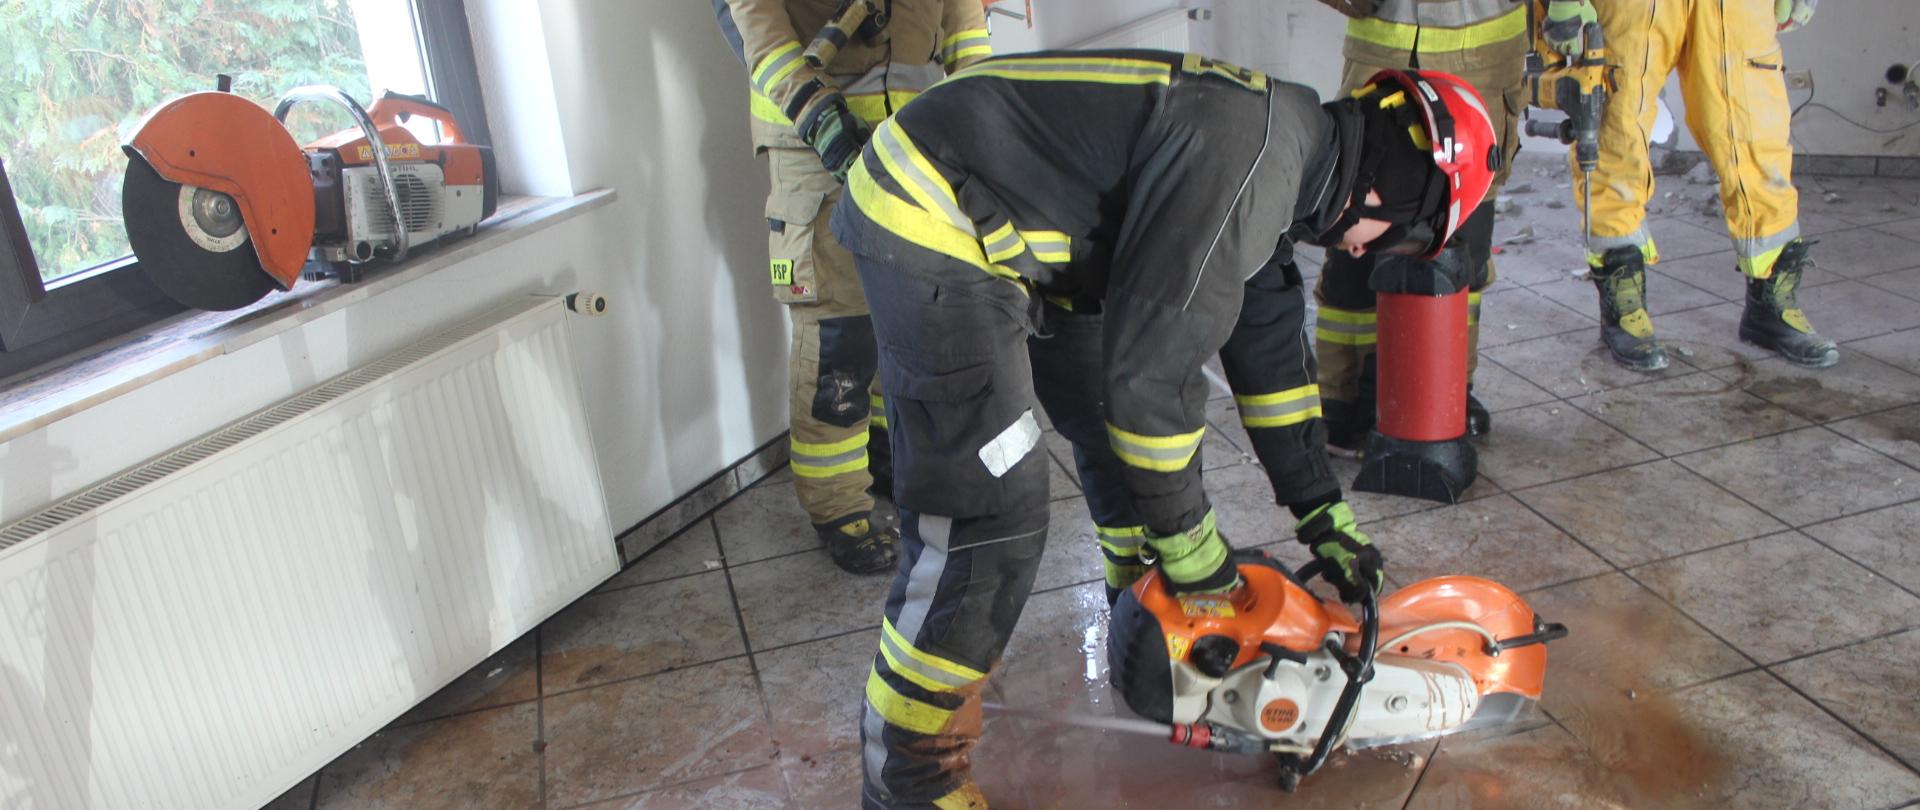 Strażak przy pomocy przecinarki do stali i betonu wykonuje nacięcie podłogi w budynku jednorodzinnym. 